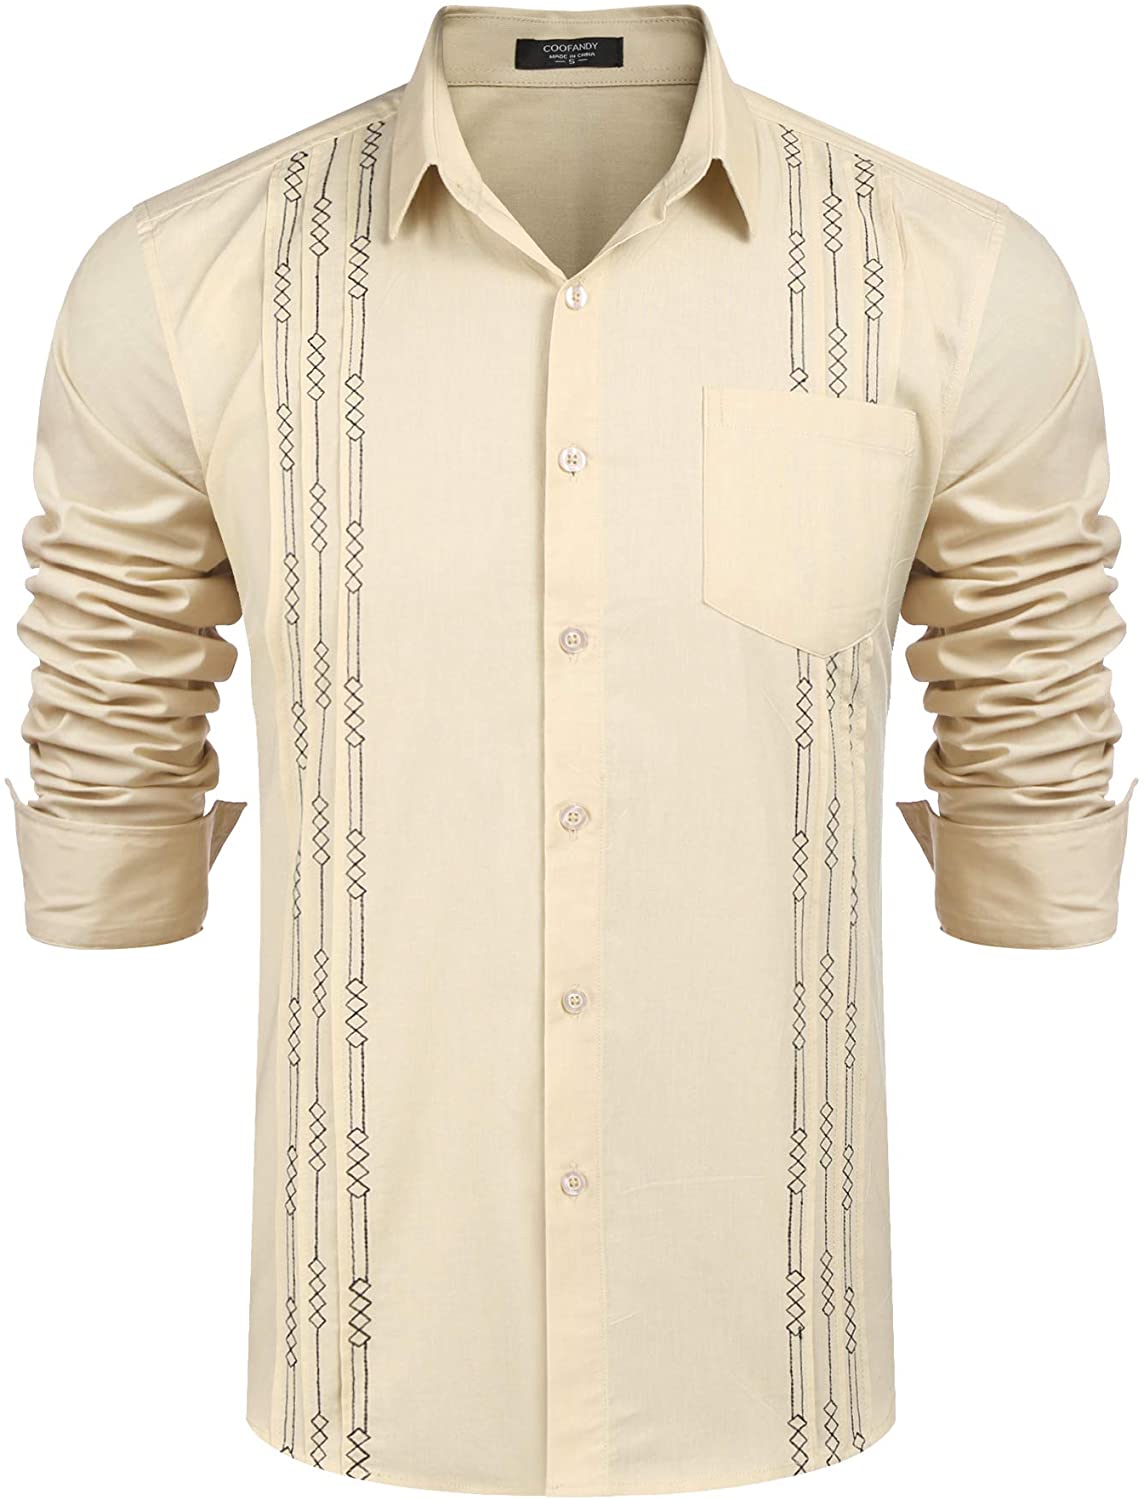 COOFANDY Men's Short Sleeve Linen Shirt Cuban Beach Tops Pocket Button ...